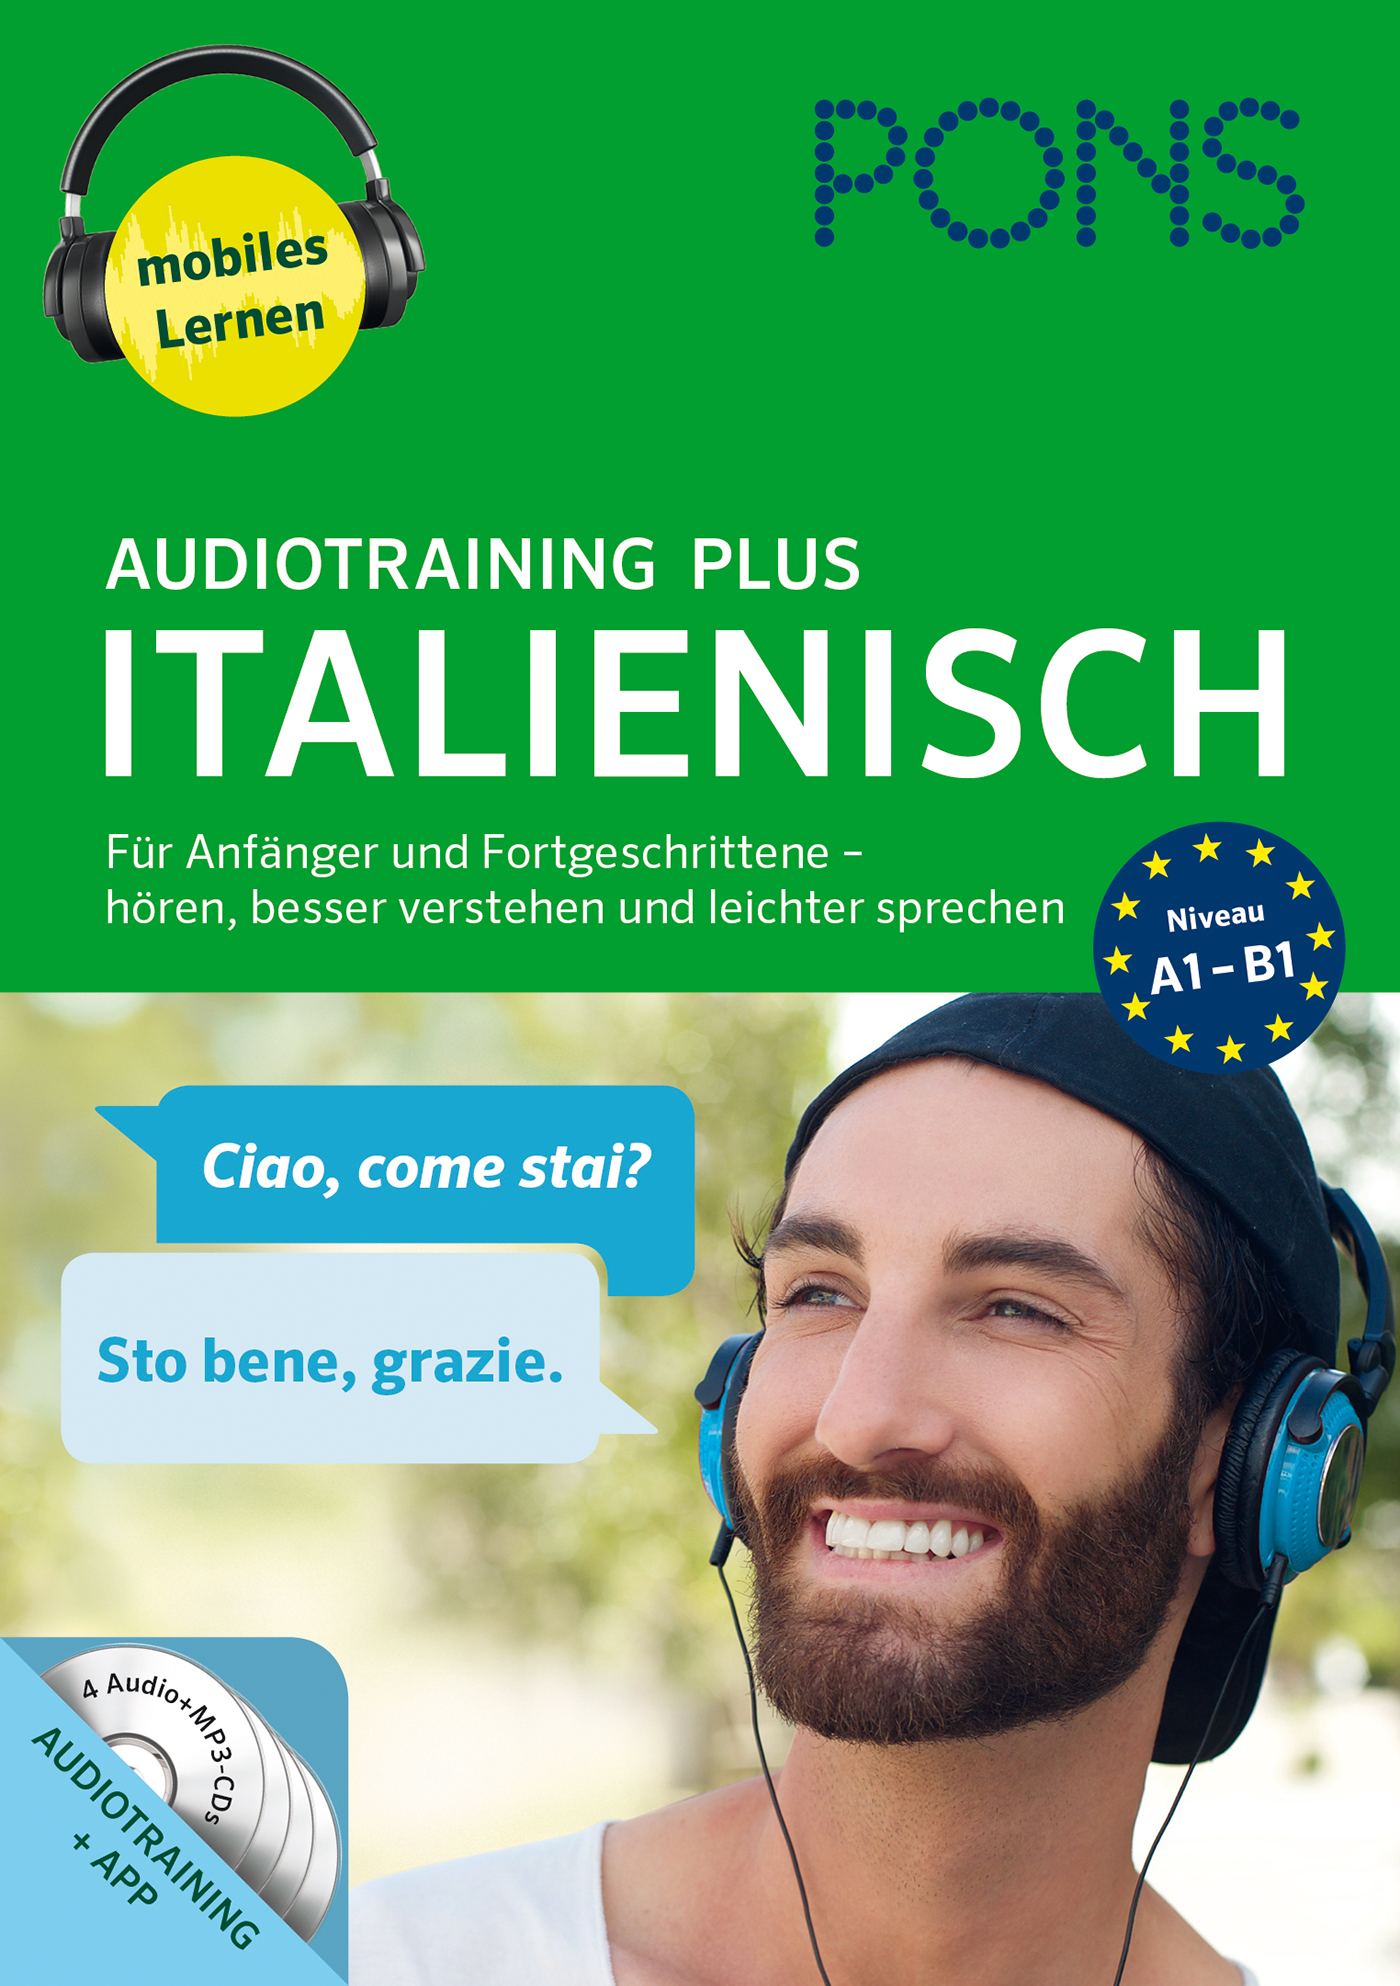 PONS Audiotraining Plus Italienisch